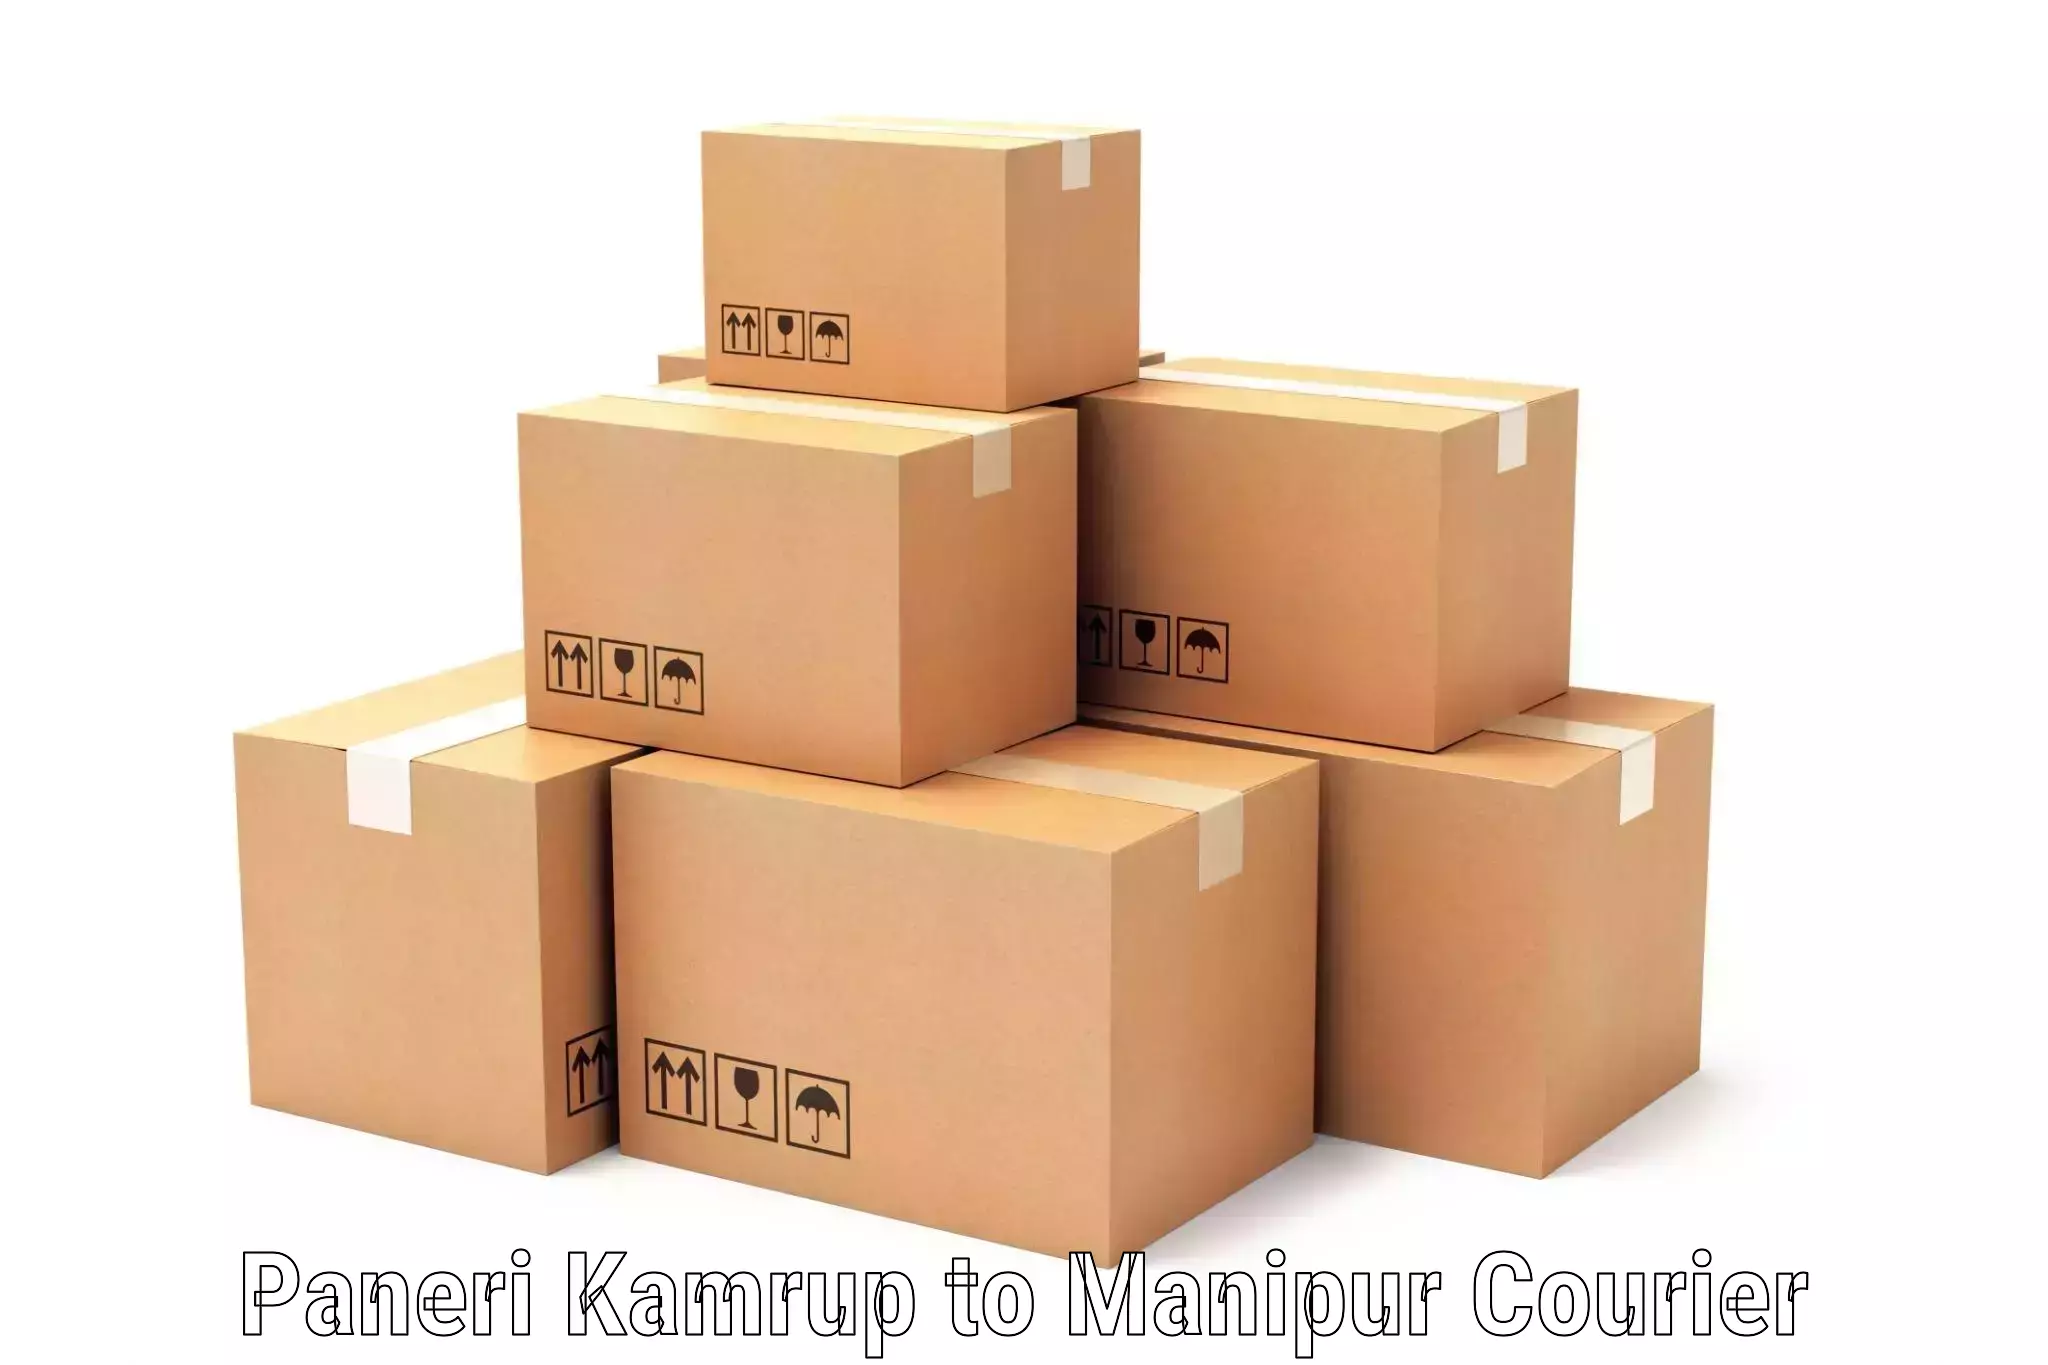 Efficient cargo handling in Paneri Kamrup to NIT Manipur